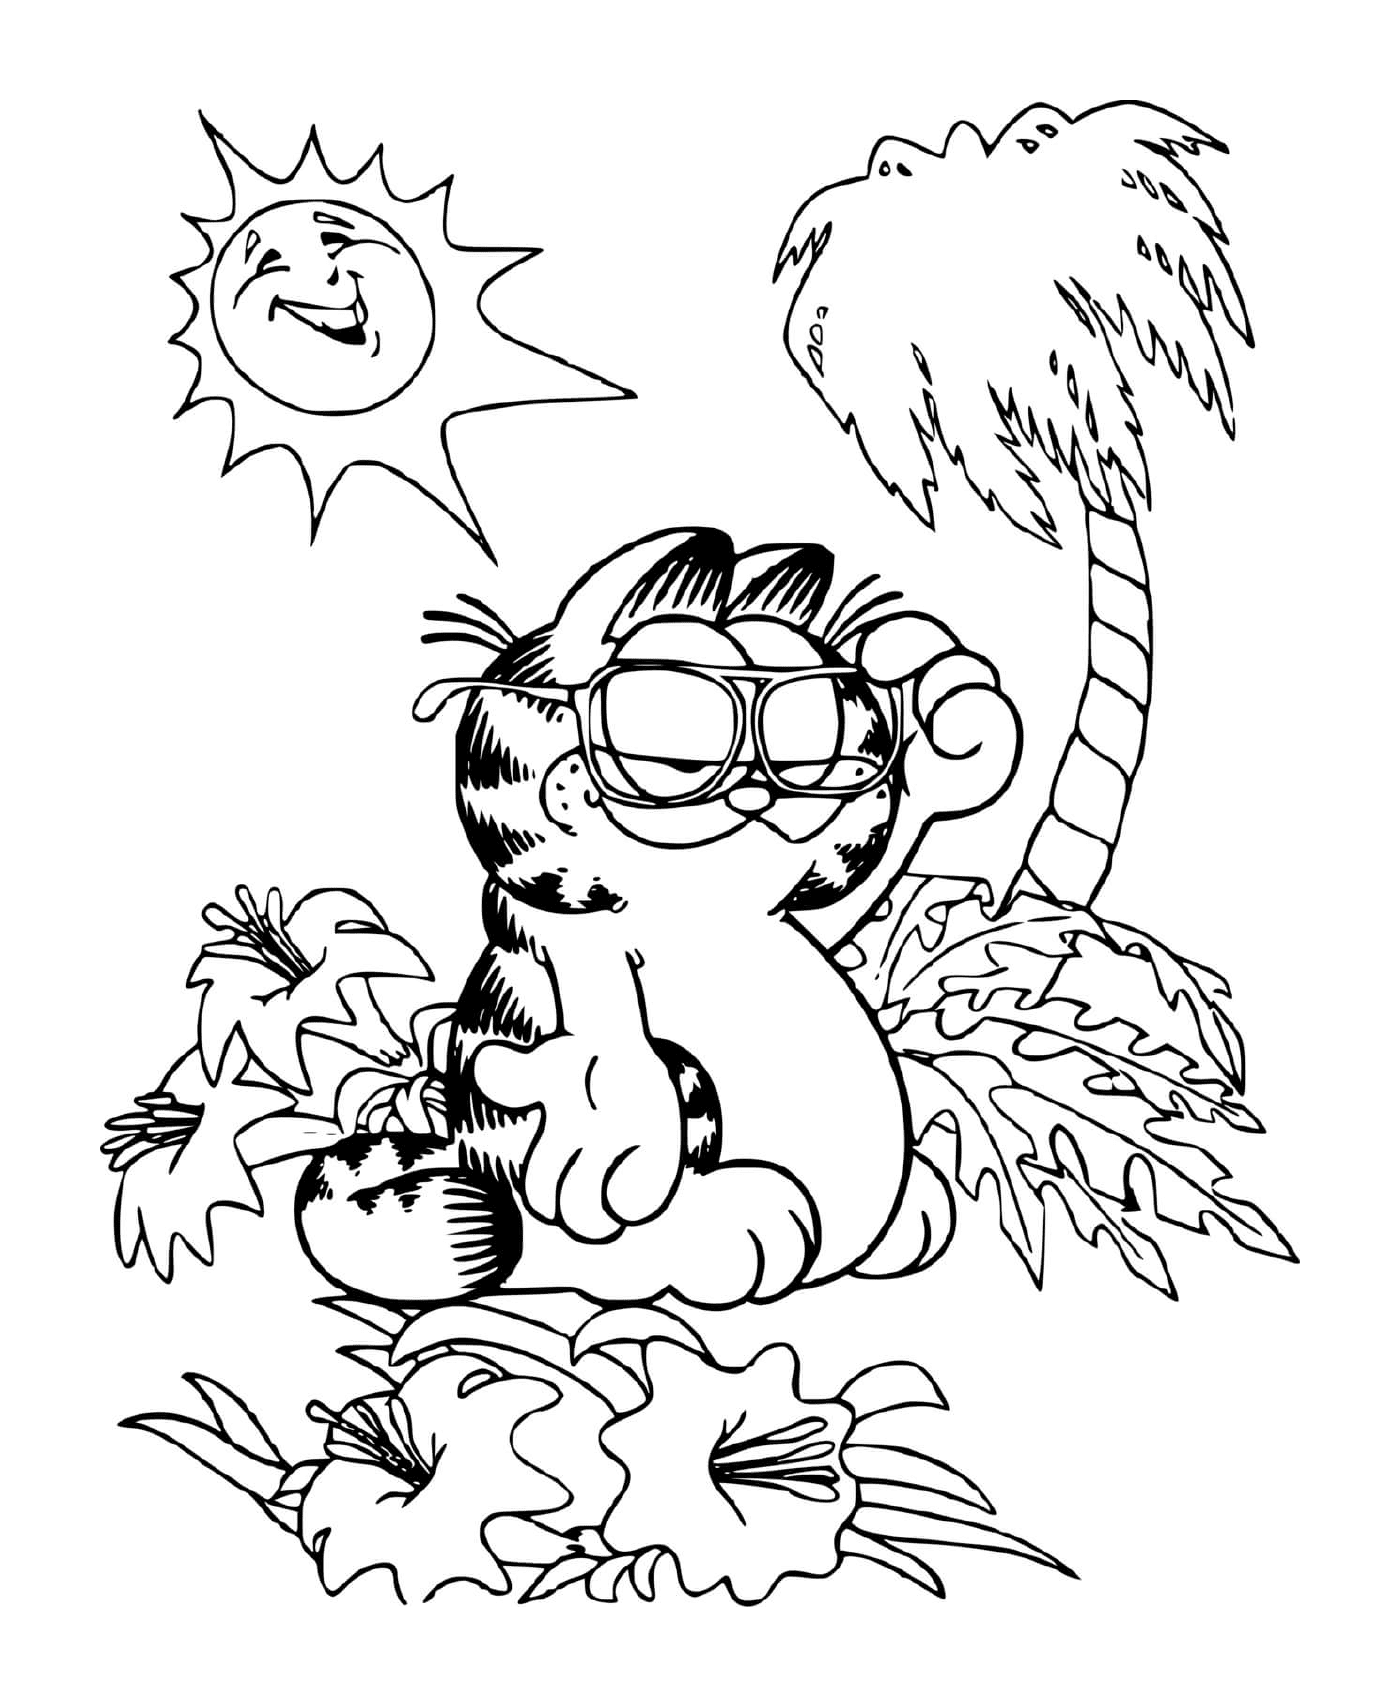  Garfield descansa bajo una palmera 